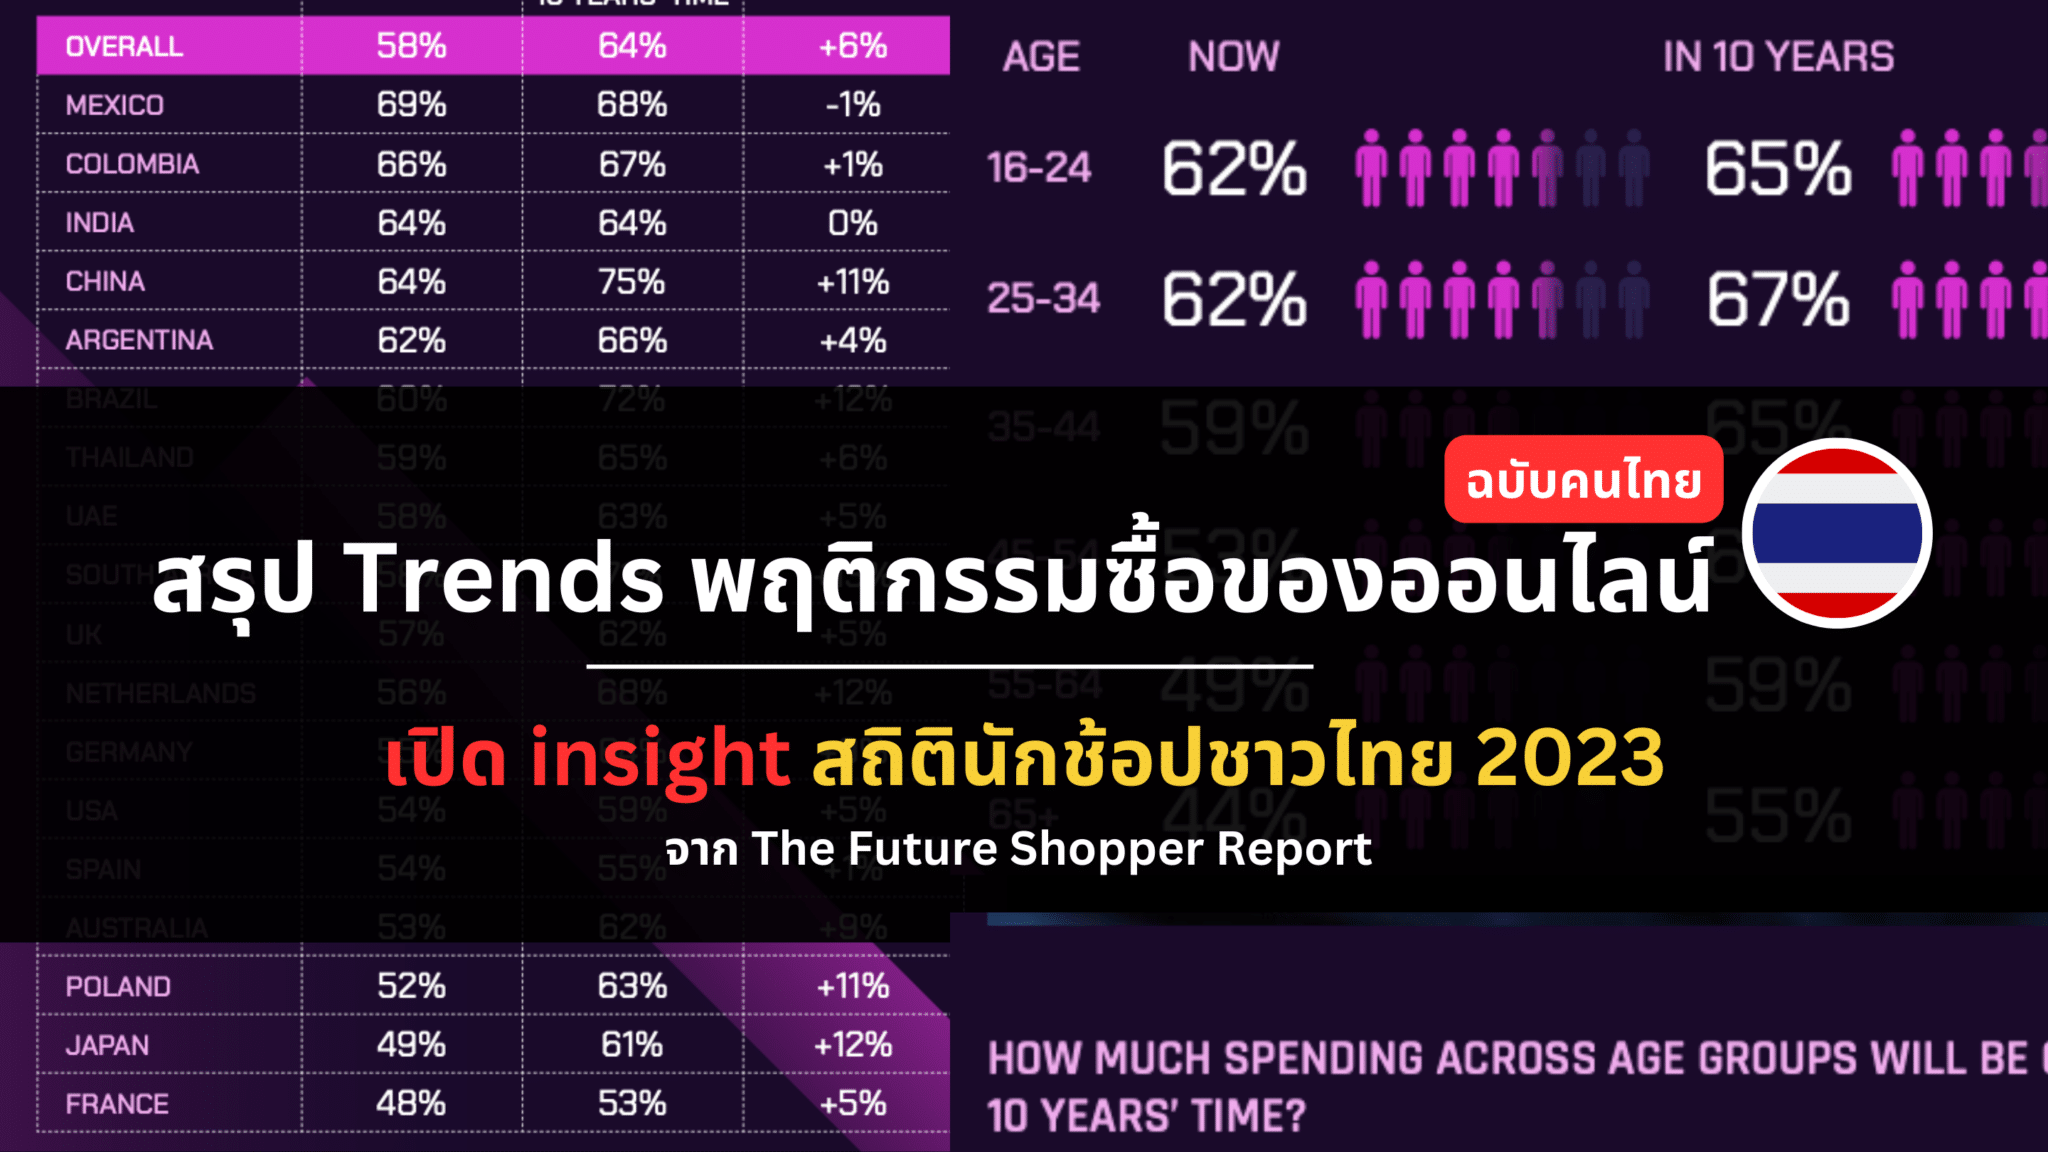 Insight ข้อมูลพฤติกรรมซื้อของออนไลน์ จาก The Future Shopper 2023 